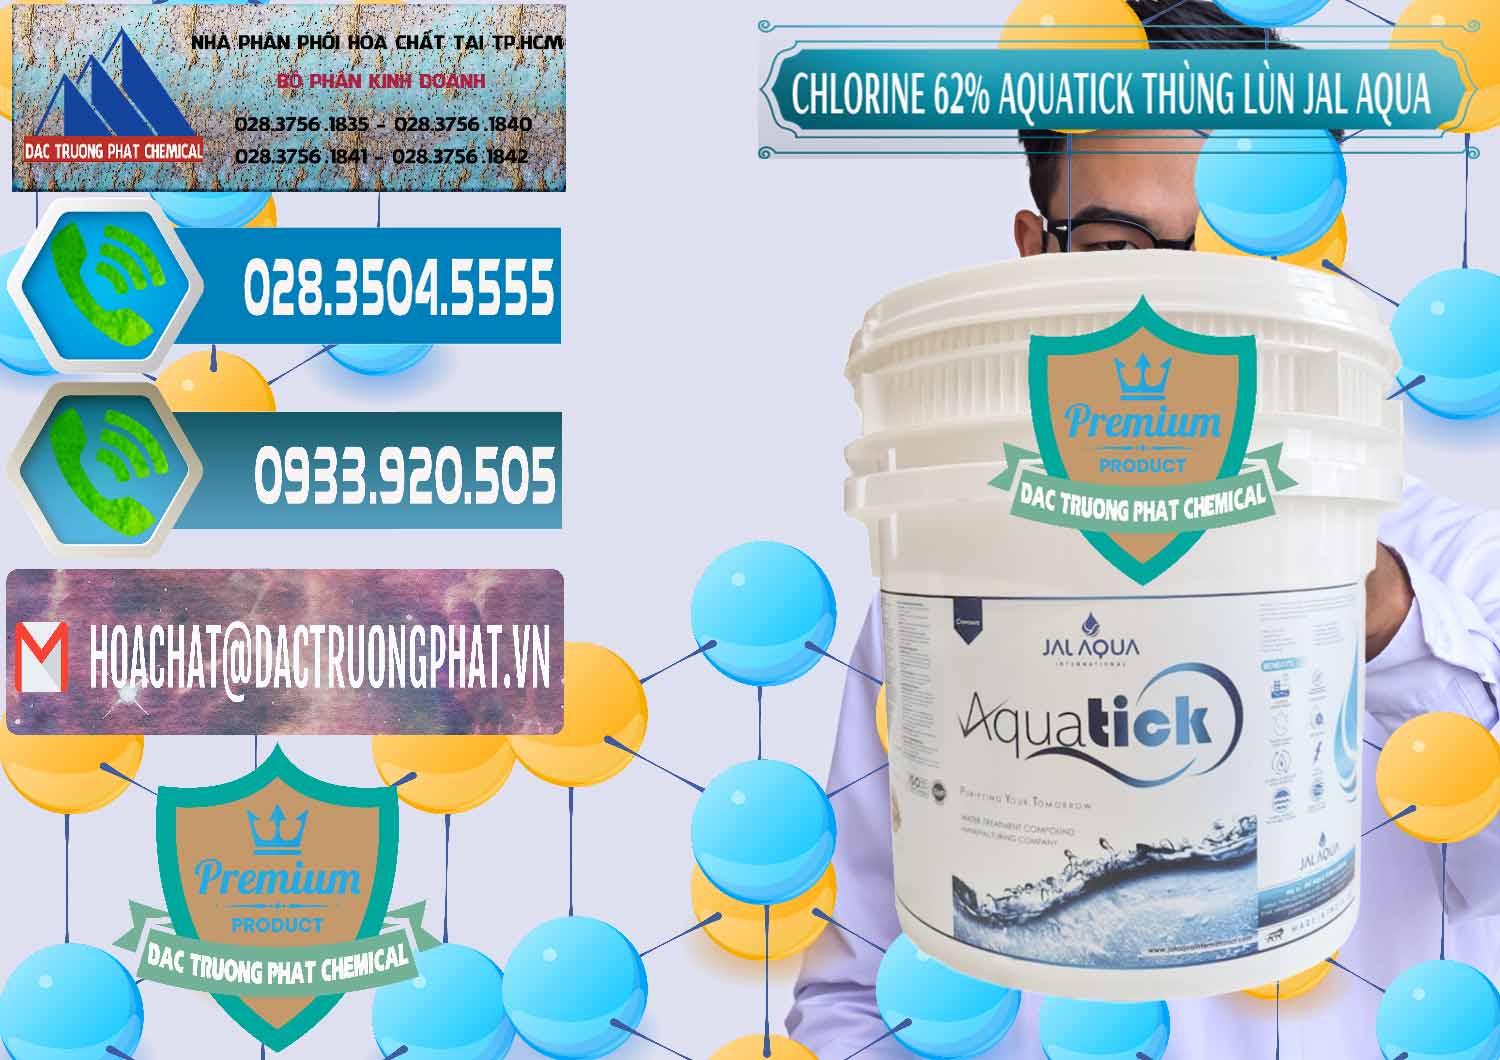 Công ty cung cấp _ bán Chlorine – Clorin 62% Aquatick Thùng Lùn Jal Aqua Ấn Độ India - 0238 - Chuyên kinh doanh & cung cấp hóa chất tại TP.HCM - congtyhoachat.net